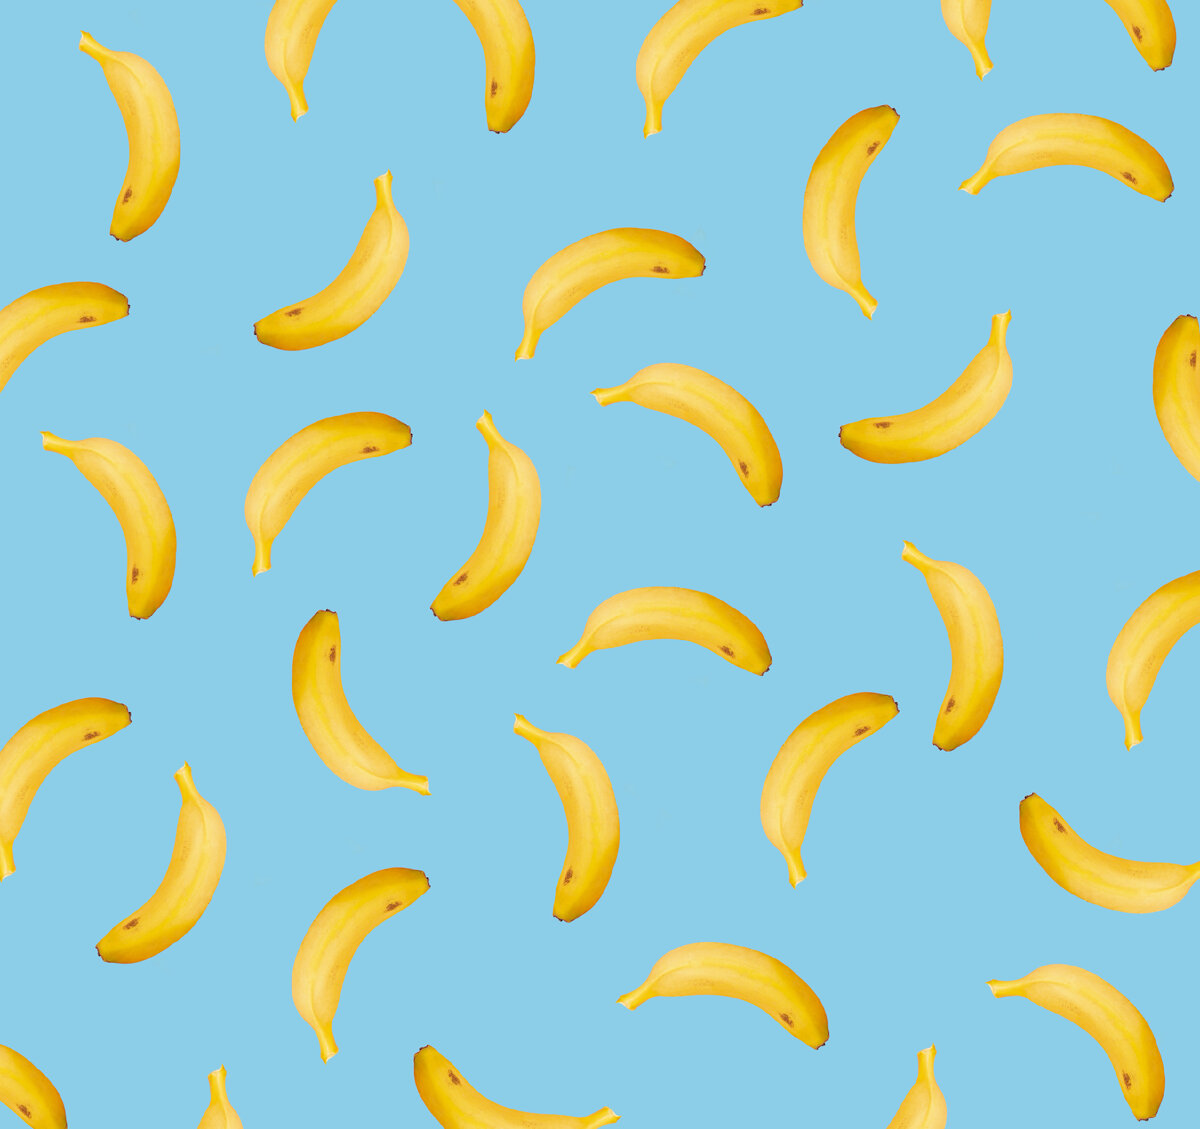 
Благодаря содержанию калия и витаминов группы B, бананы оказывают пользу для здоровья сердца и мышц.